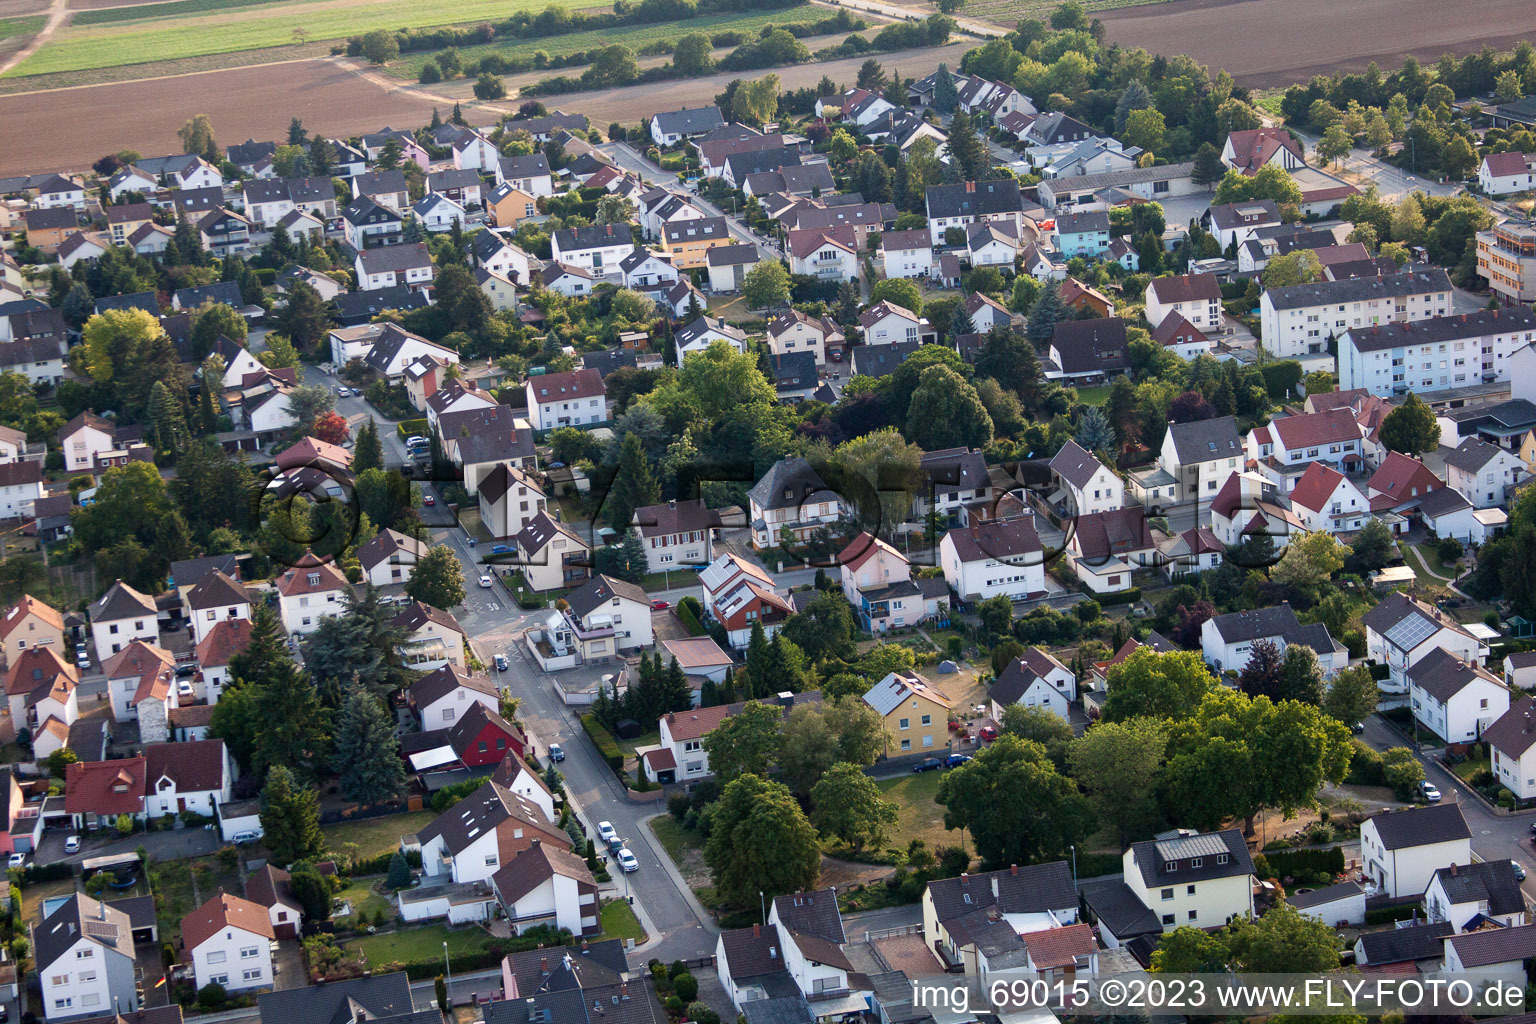 Drone image of District Dannstadt in Dannstadt-Schauernheim in the state Rhineland-Palatinate, Germany